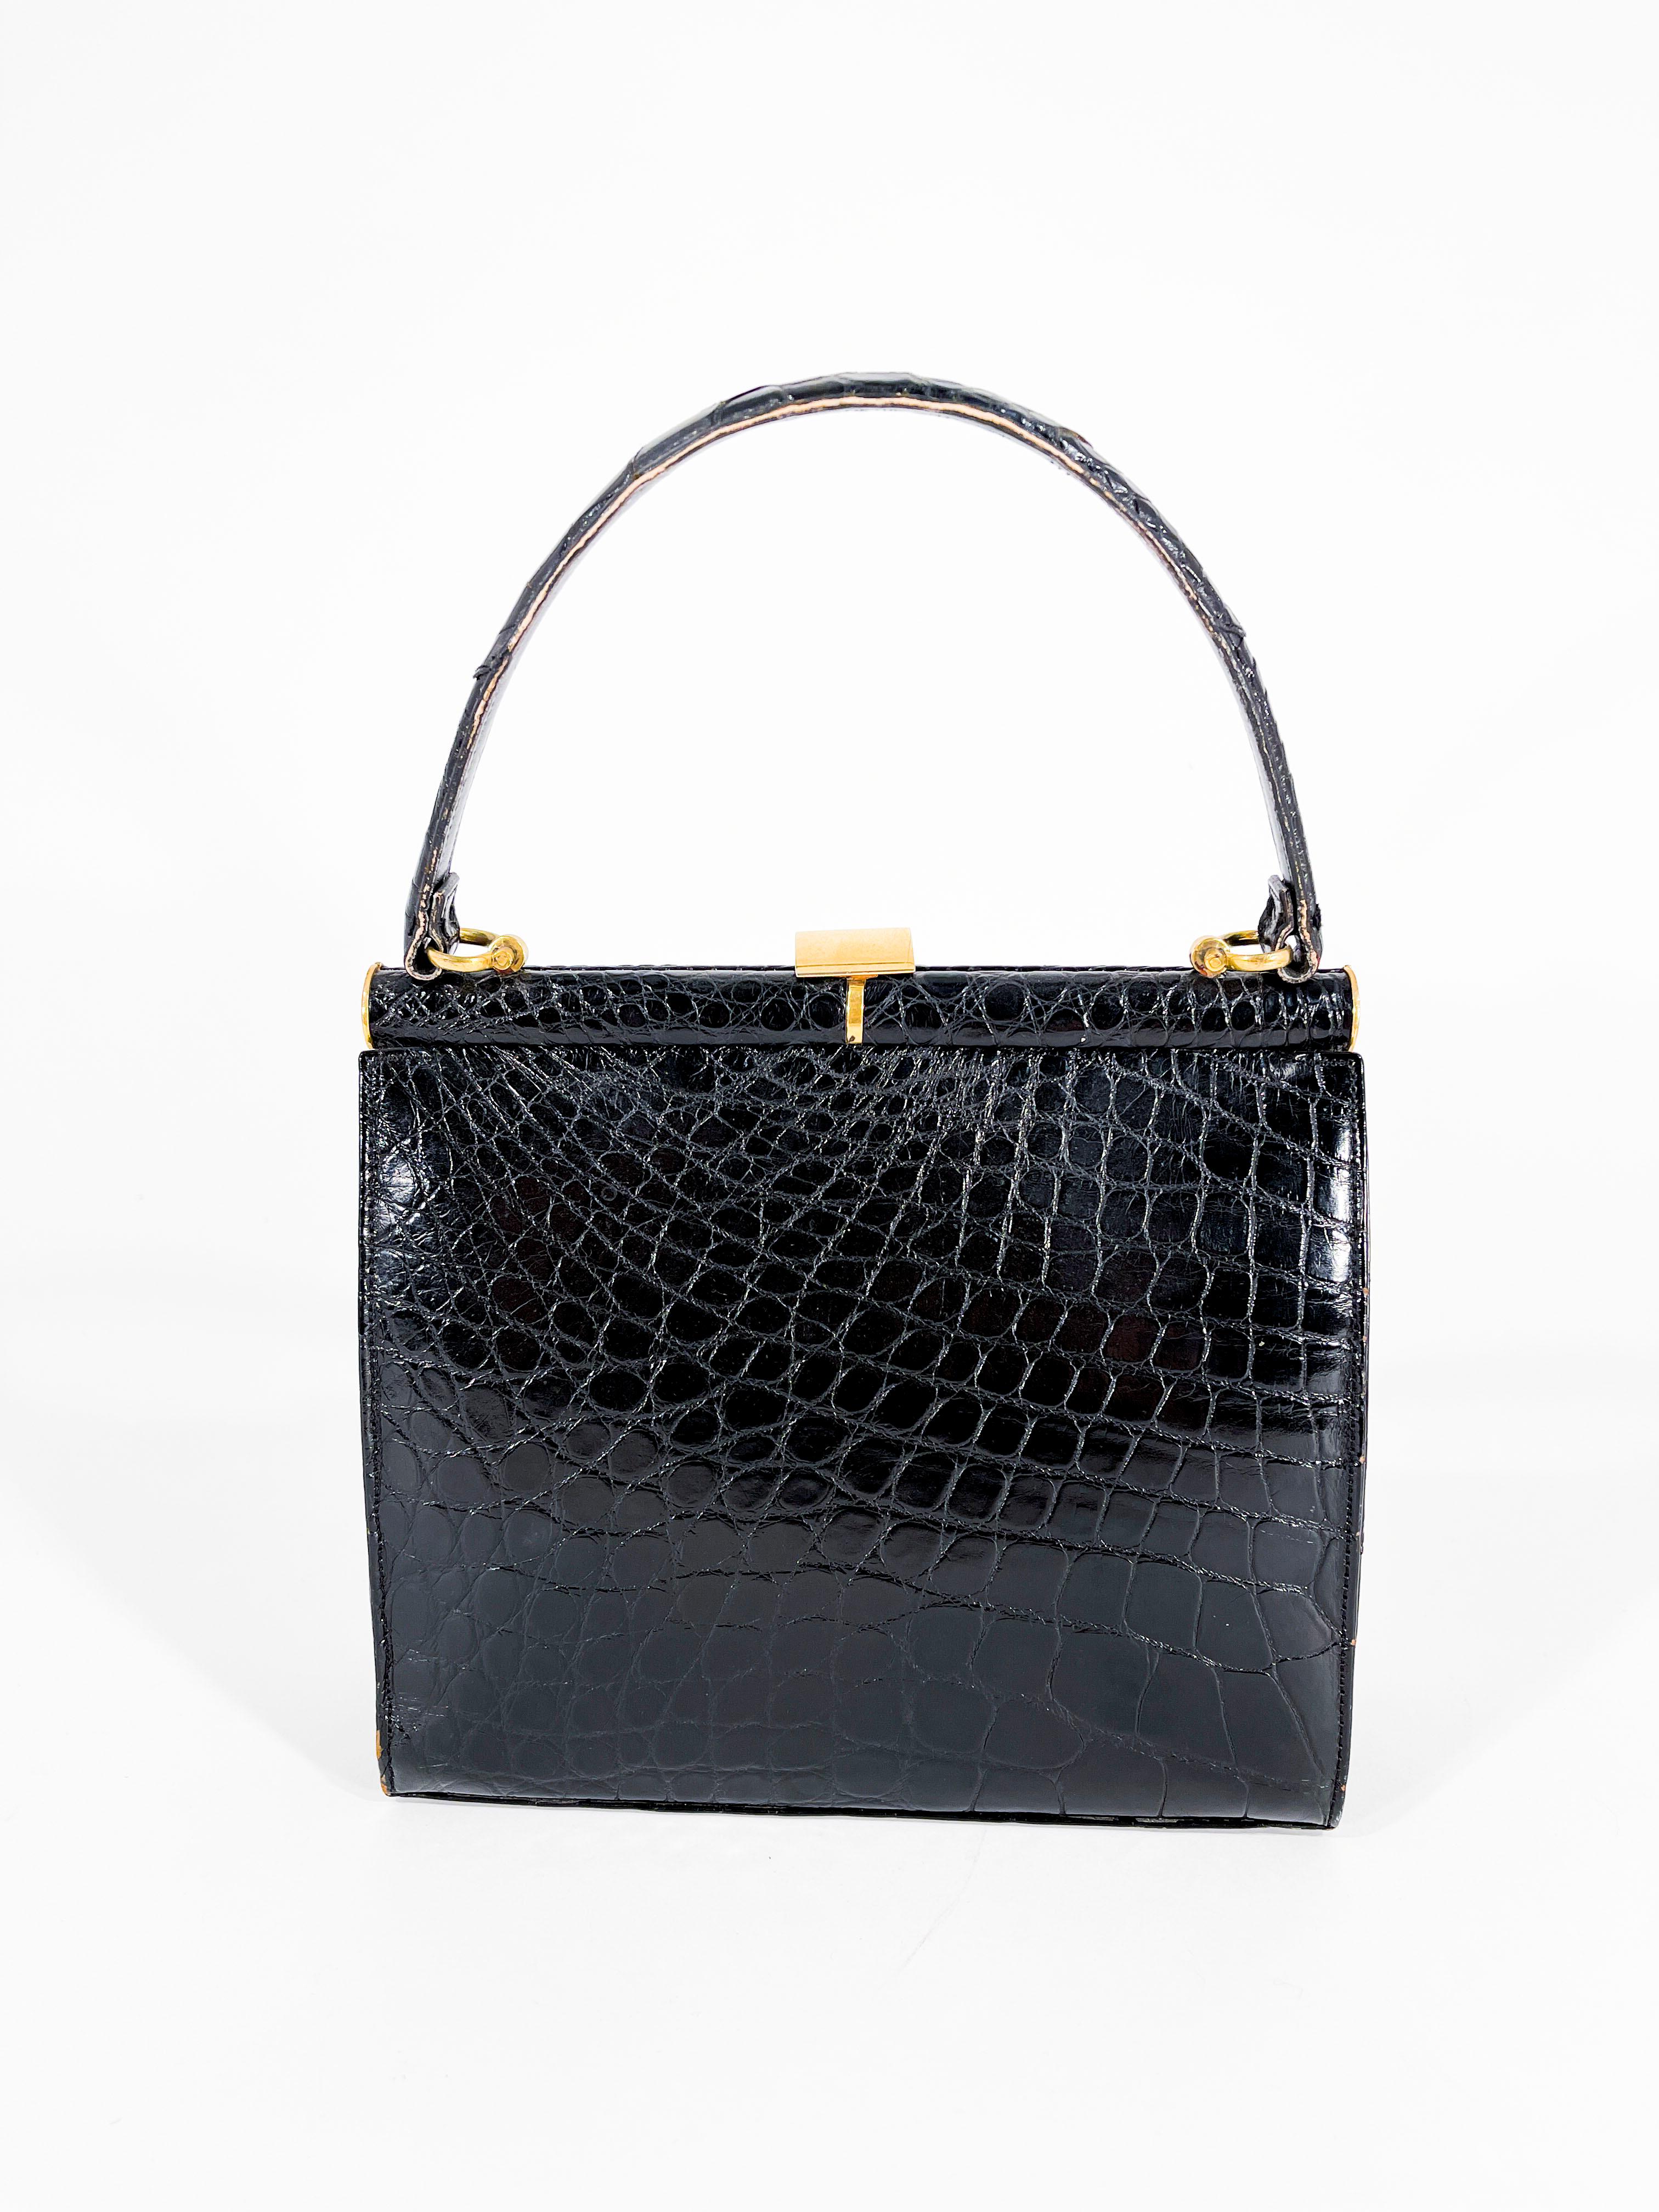 1960s Lucille De Paris Black Alligator Handbag In Good Condition In San Francisco, CA